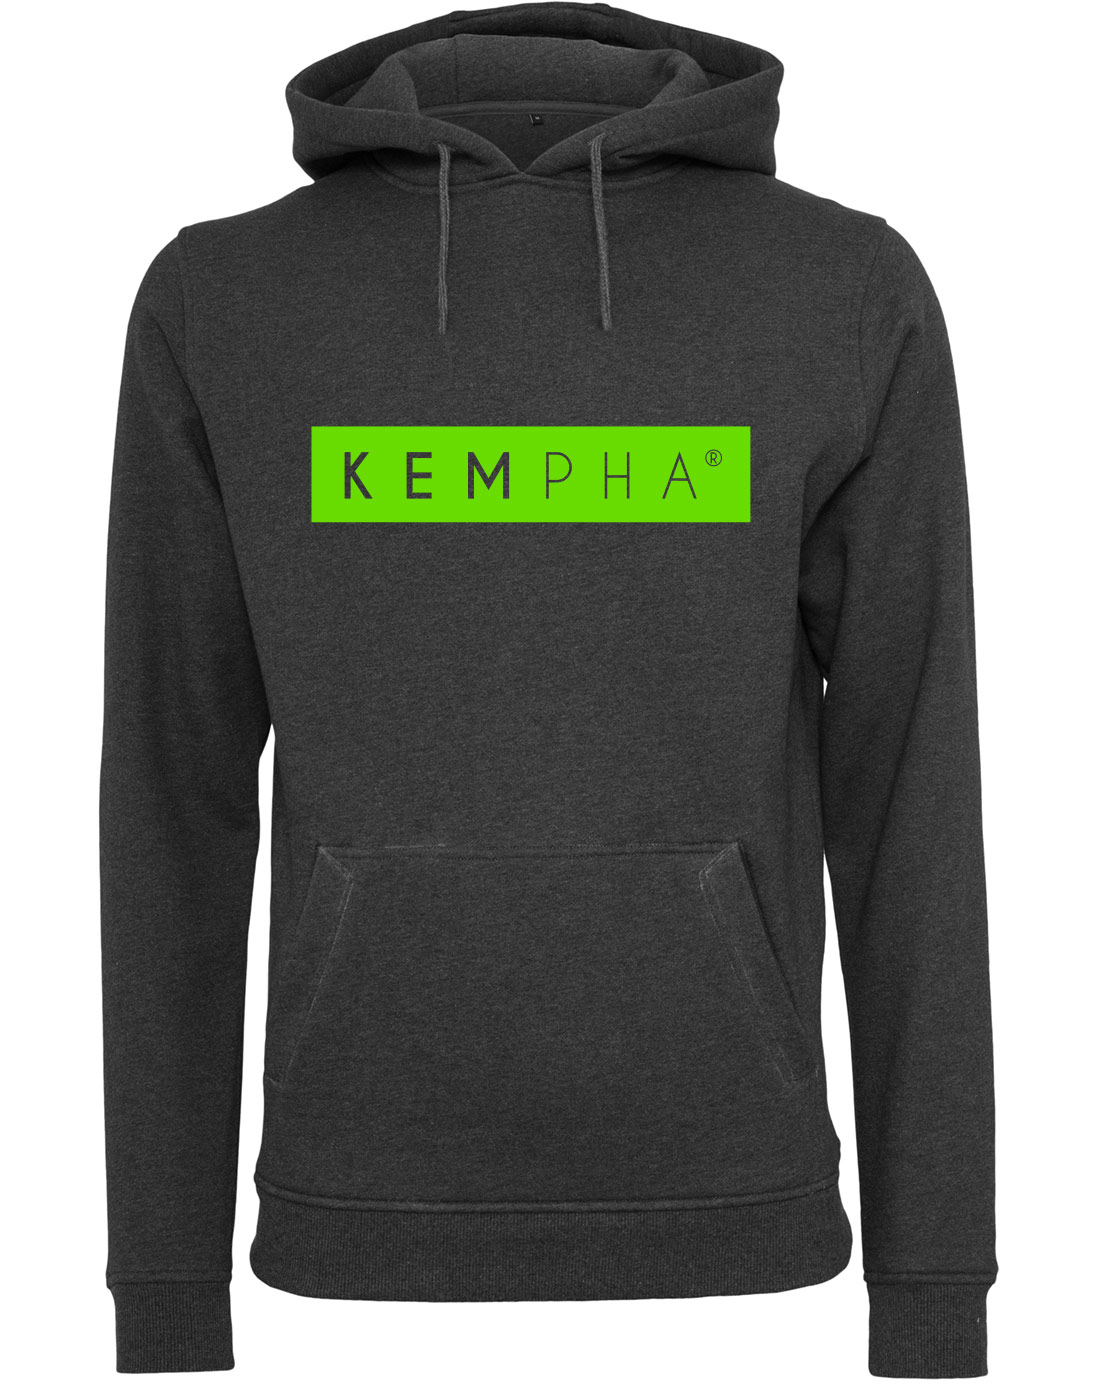 Kempha Premium Hoodie NEONgrn auf heathergrey